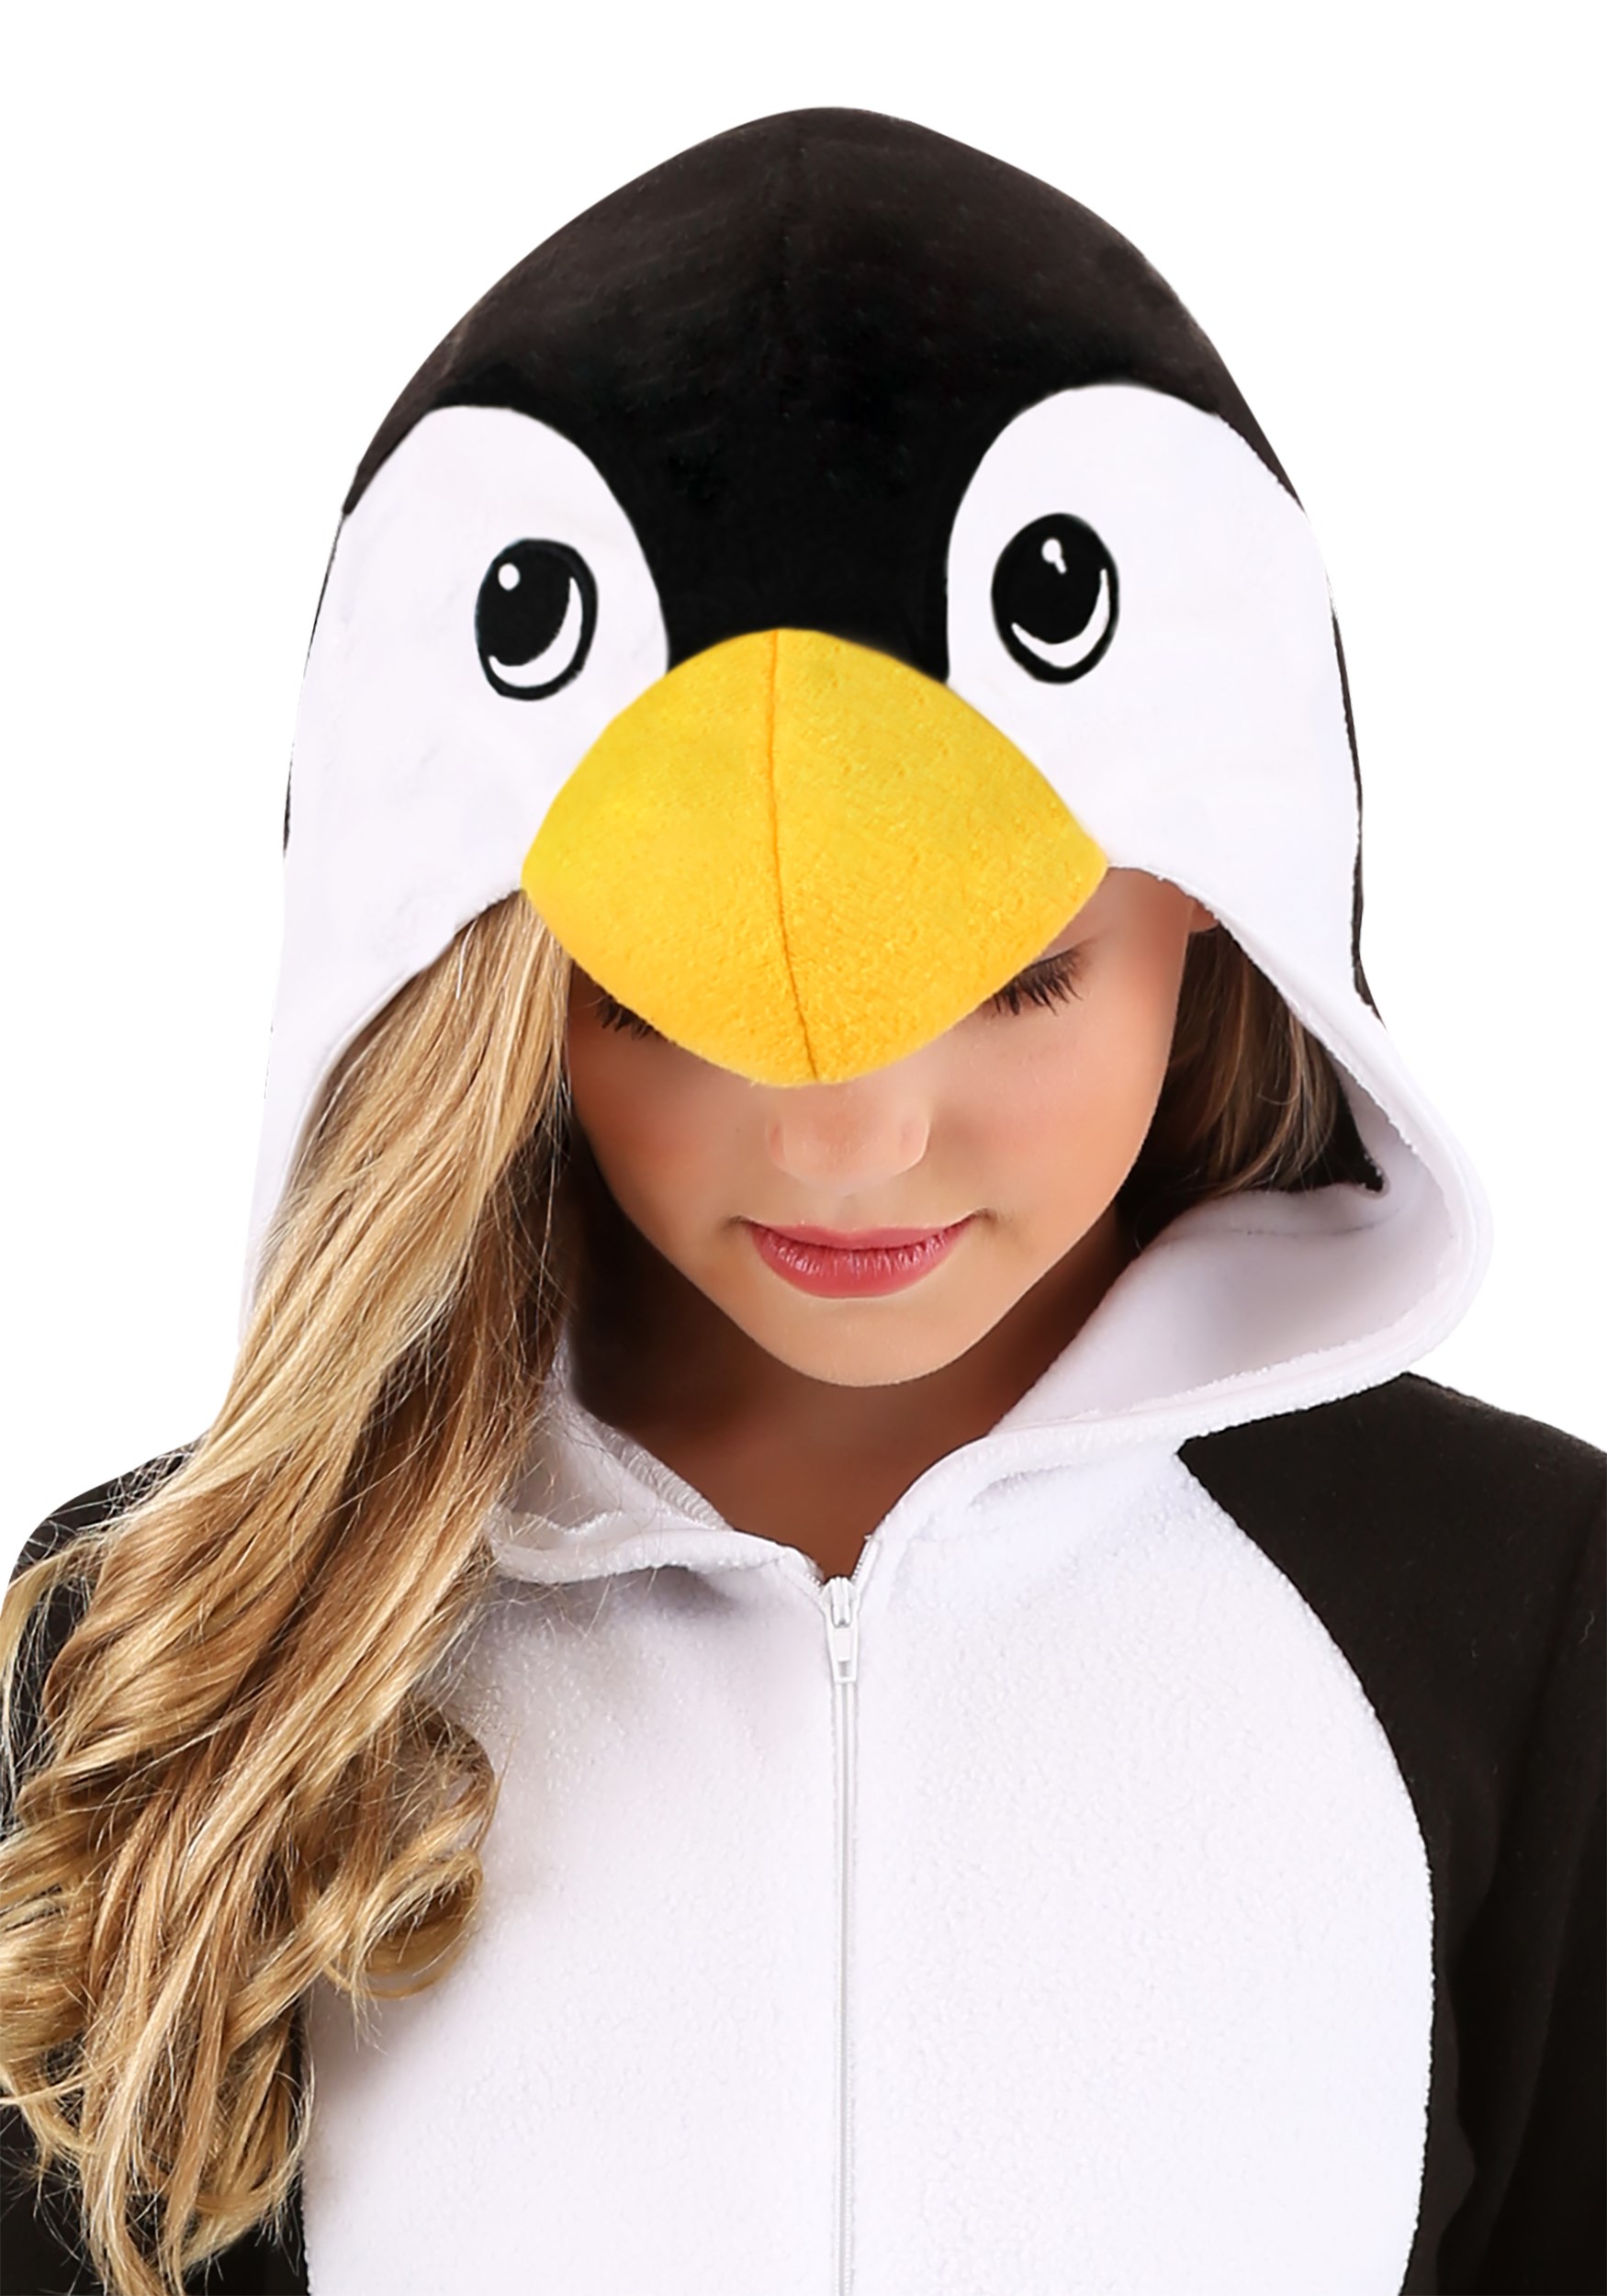 Penguin costume child